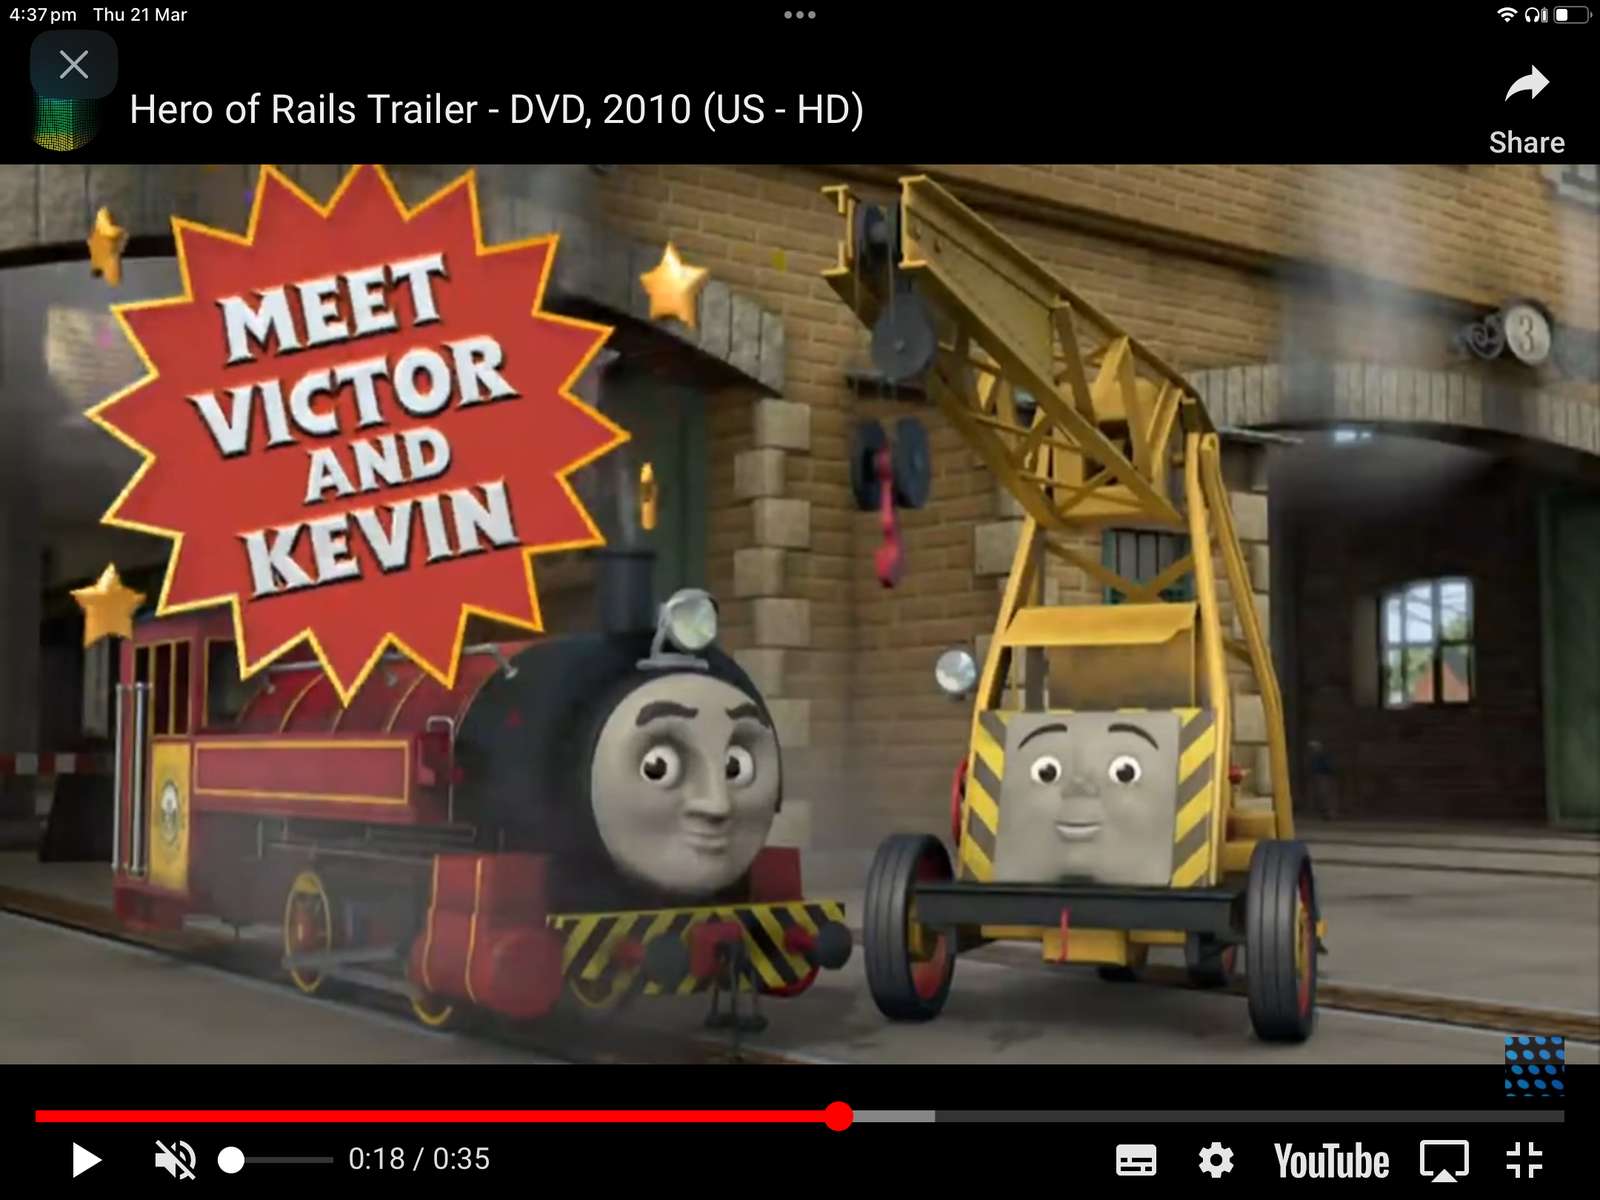 Trailer zum Helden von Thomas und seinen Freunden Online-Puzzle vom Foto